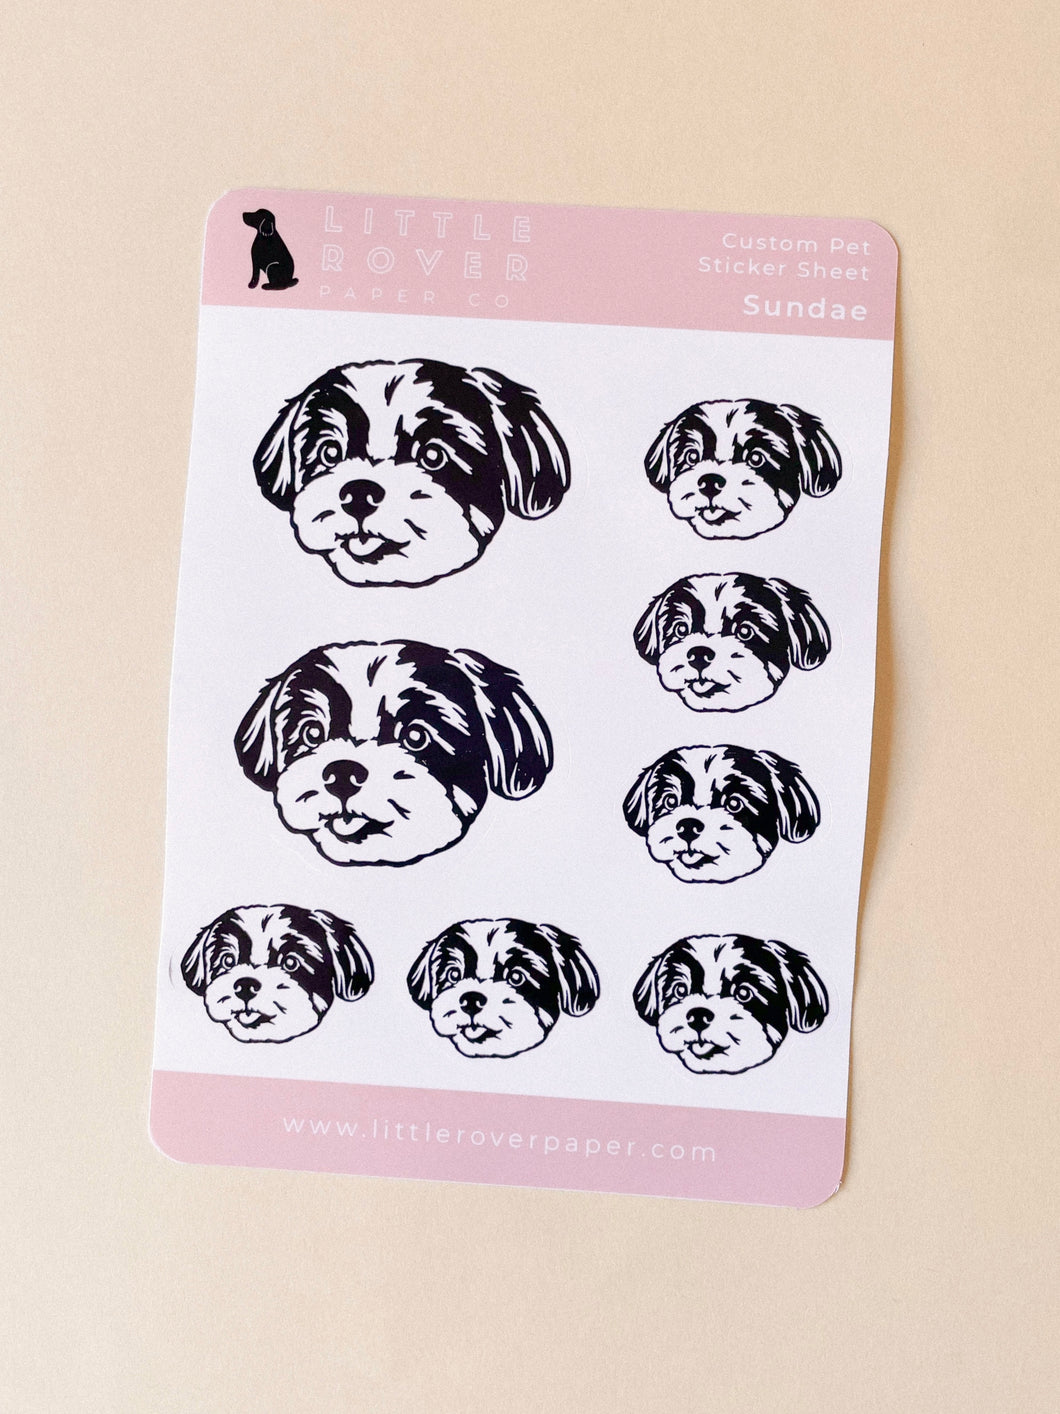 Of Quartz You're Pretty Stickers - Little Dog Paper Company